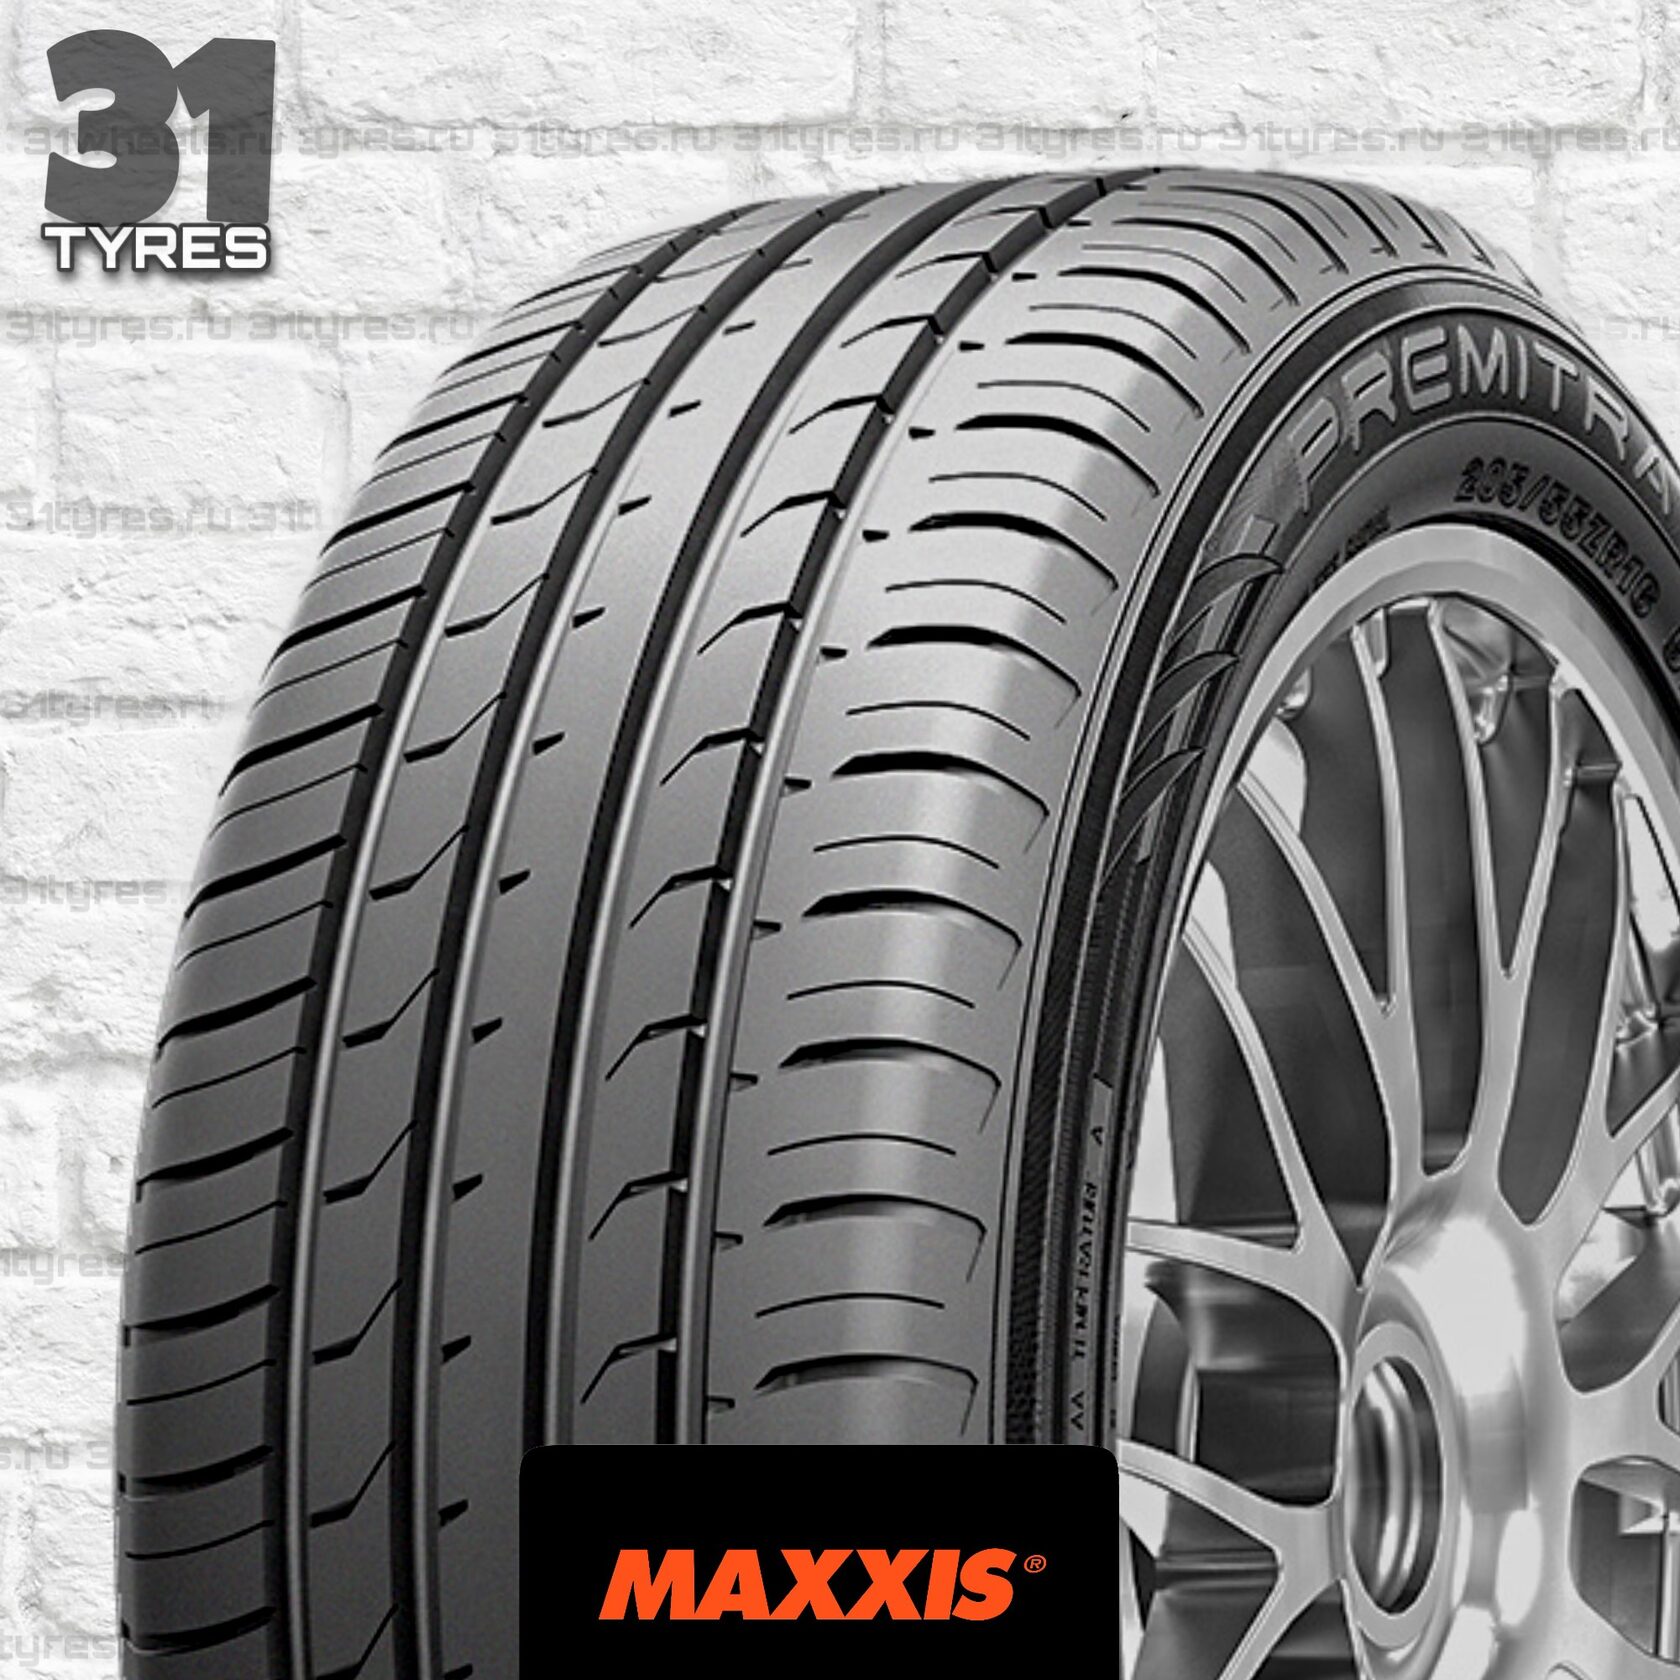 Maxxis premitra hp5 205 55 r16. Maxxis hp5. Maxxis Premitra hp5 235/45 r18 98w. Maxxis Premitra hp5 245/50 r18. Maxxis Premitra hp5.